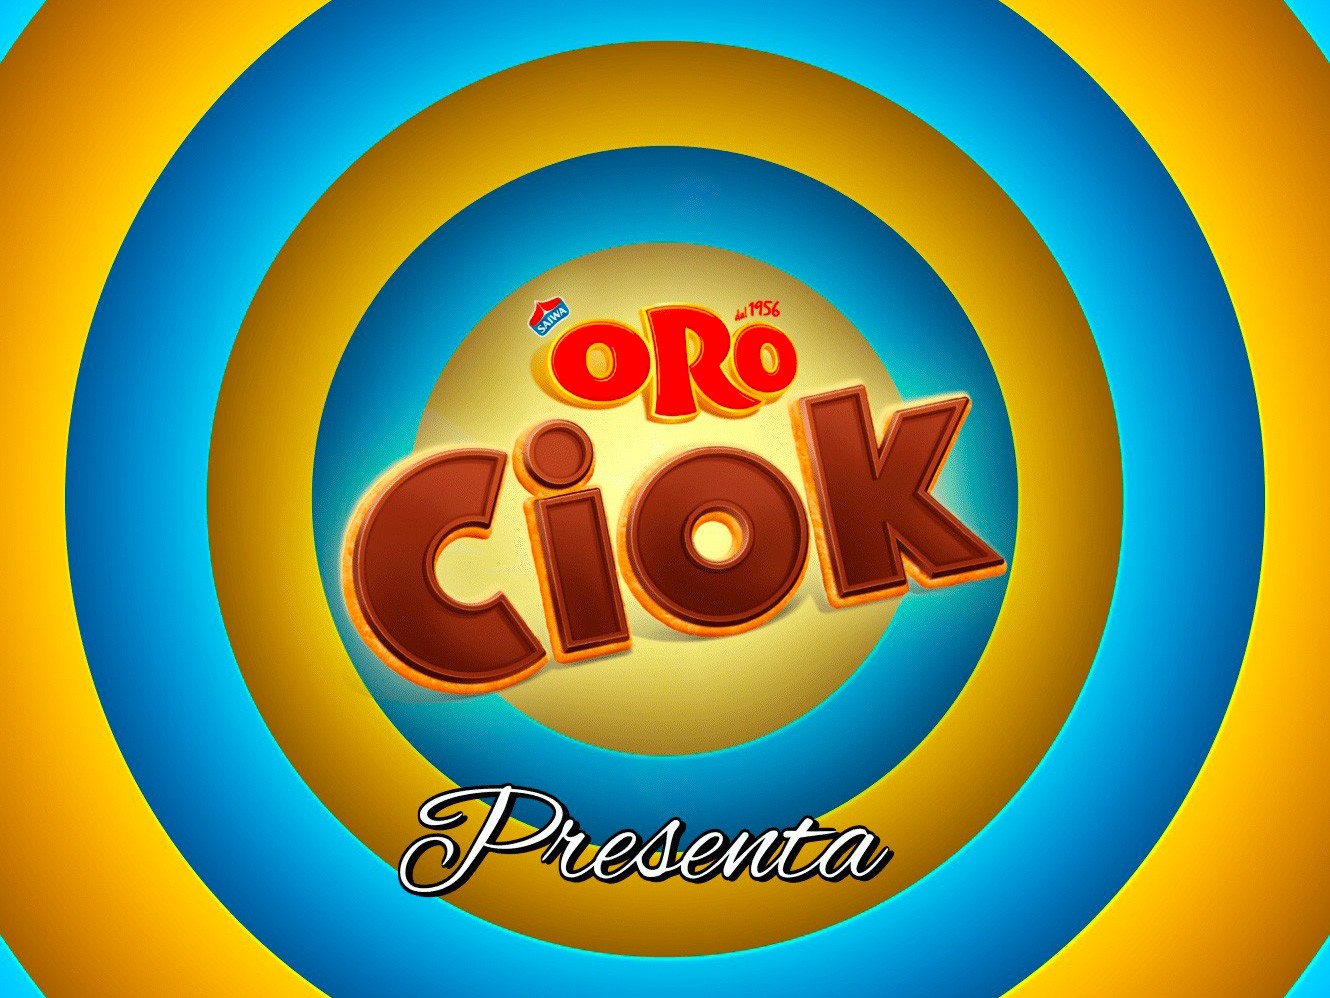 Oro-Ciok